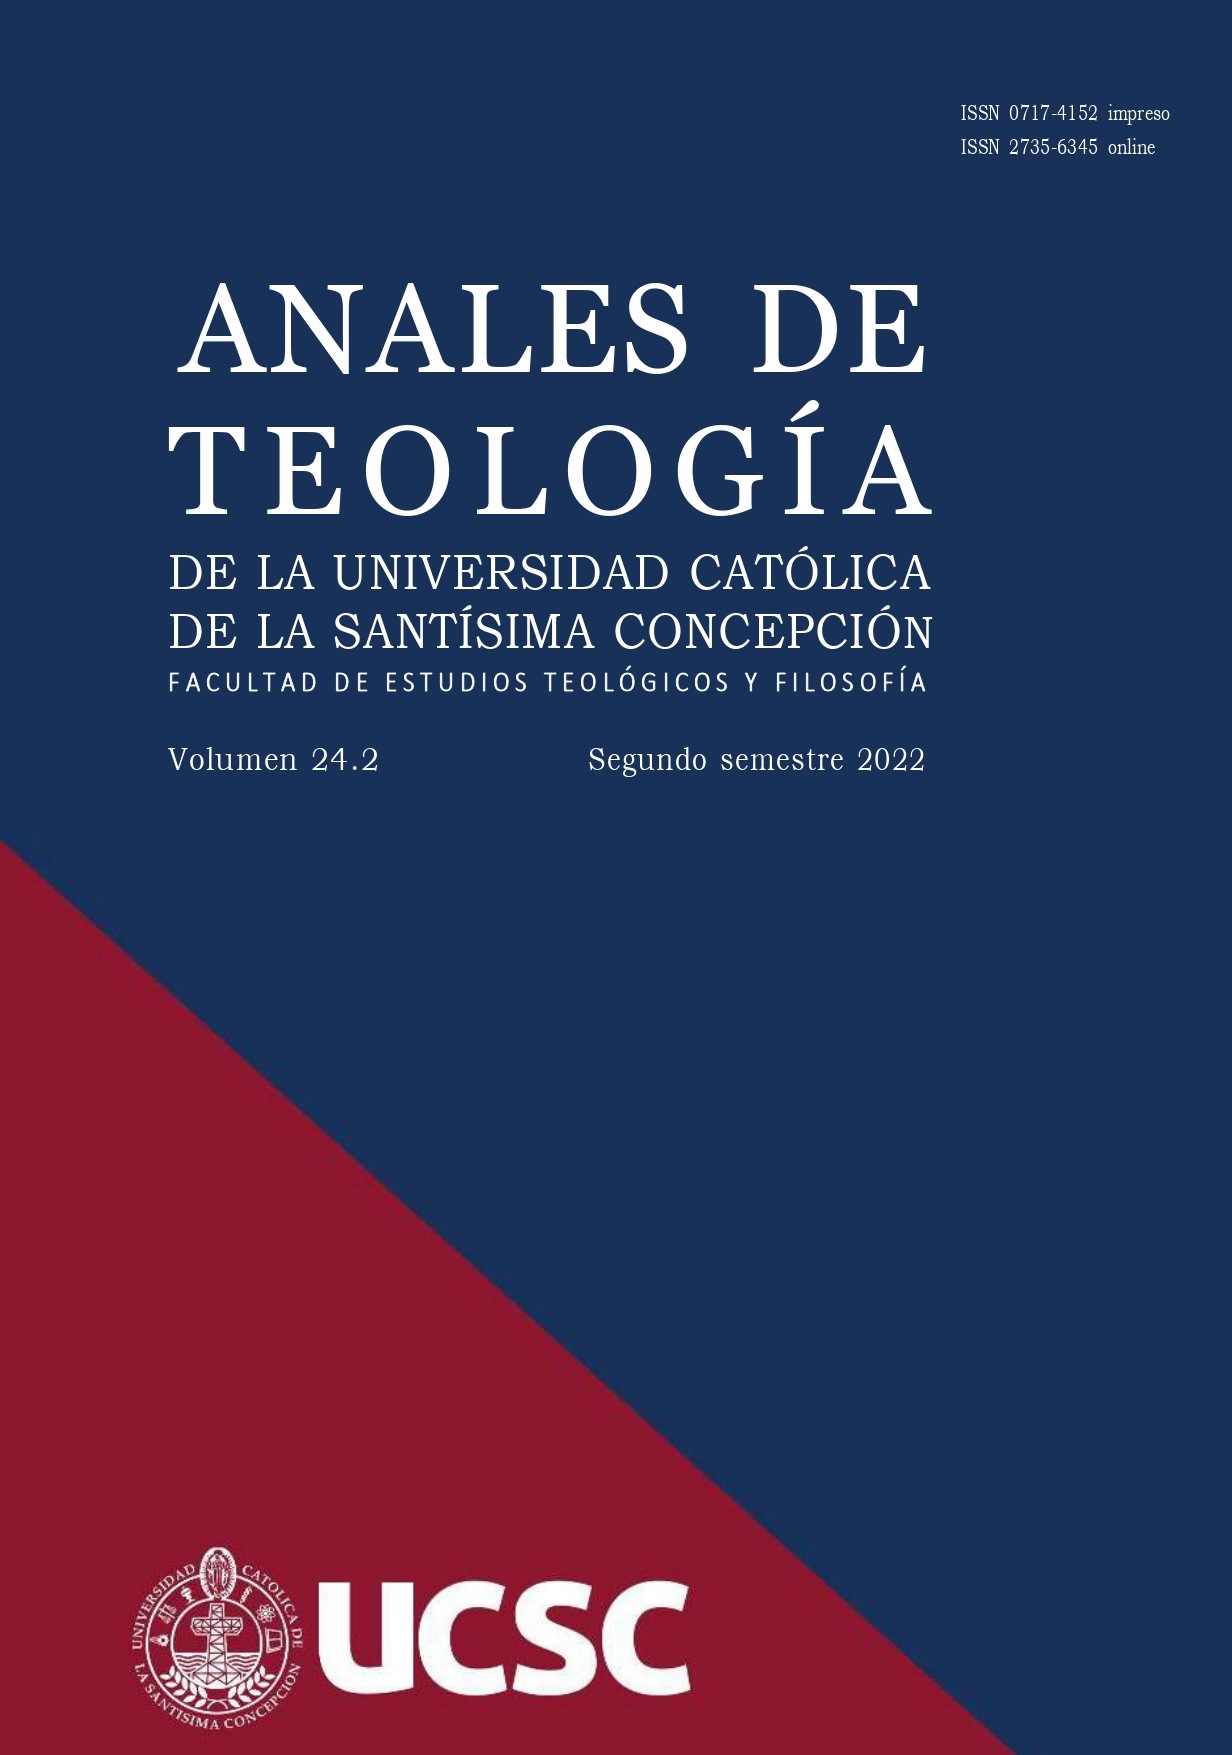 					View Vol. 17 No. 1 (2015): Anales de Teología | Enero - Junio 2015
				